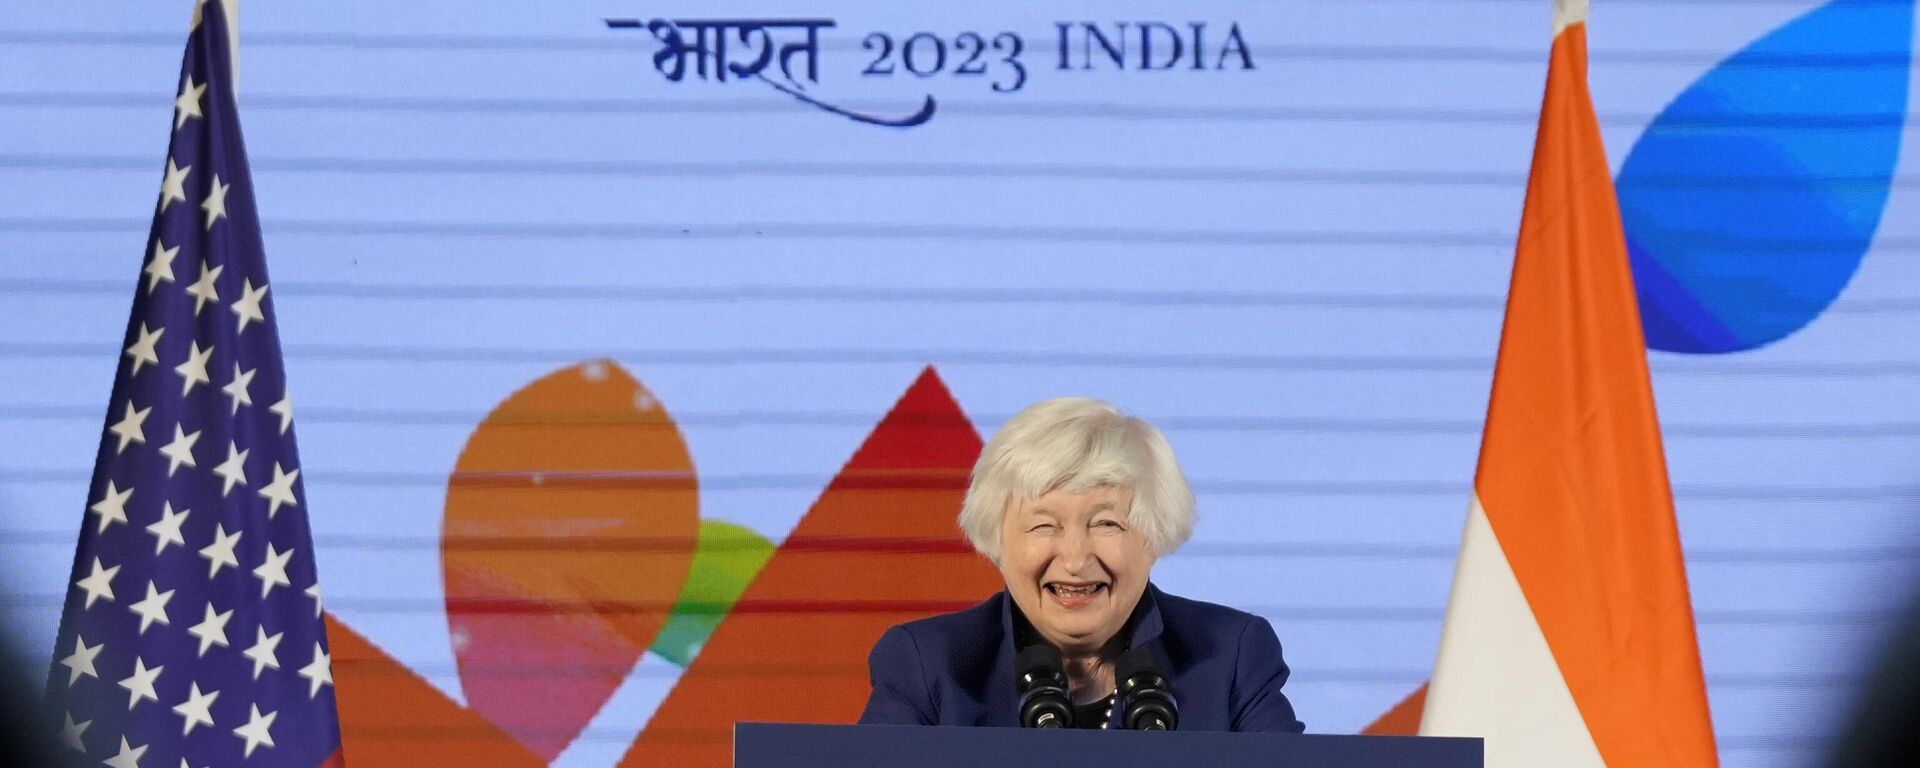 Janet Yellen, secretária do Tesouro dos EUA, durante encontro de líderes da economia do G20 em Bengaluru, na Índia, em 23 de fevereiro de 2023 - Sputnik Brasil, 1920, 23.02.2023